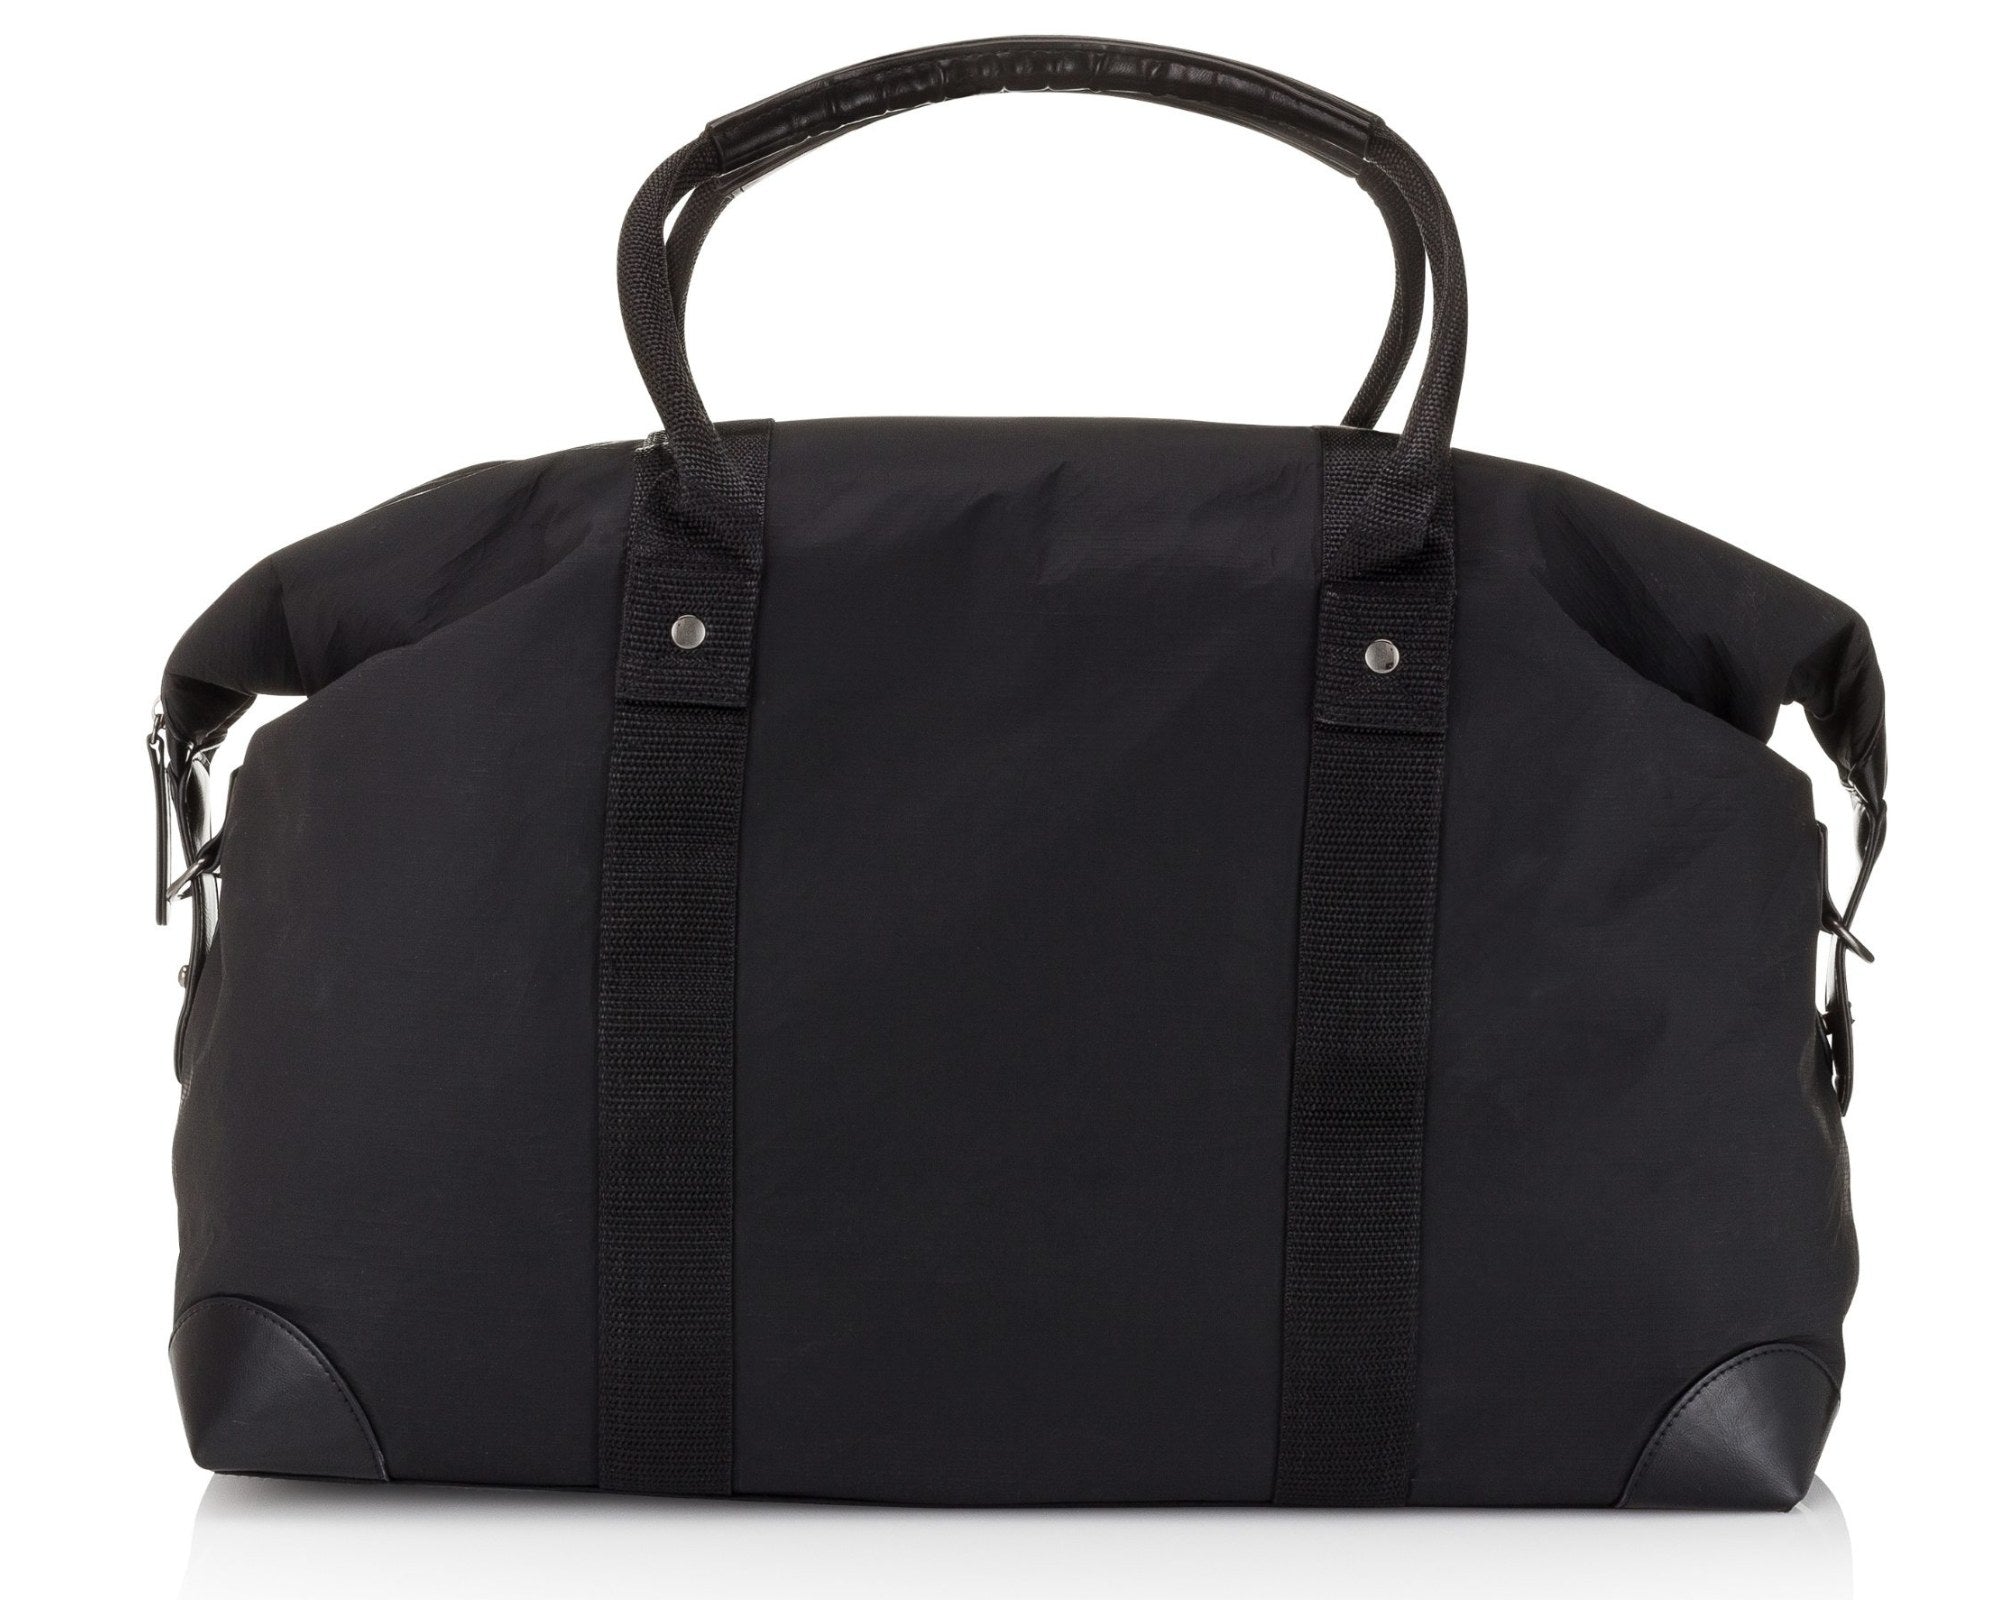 The Weekender Travel Bag in Black - Water Resistant Weekend Tote